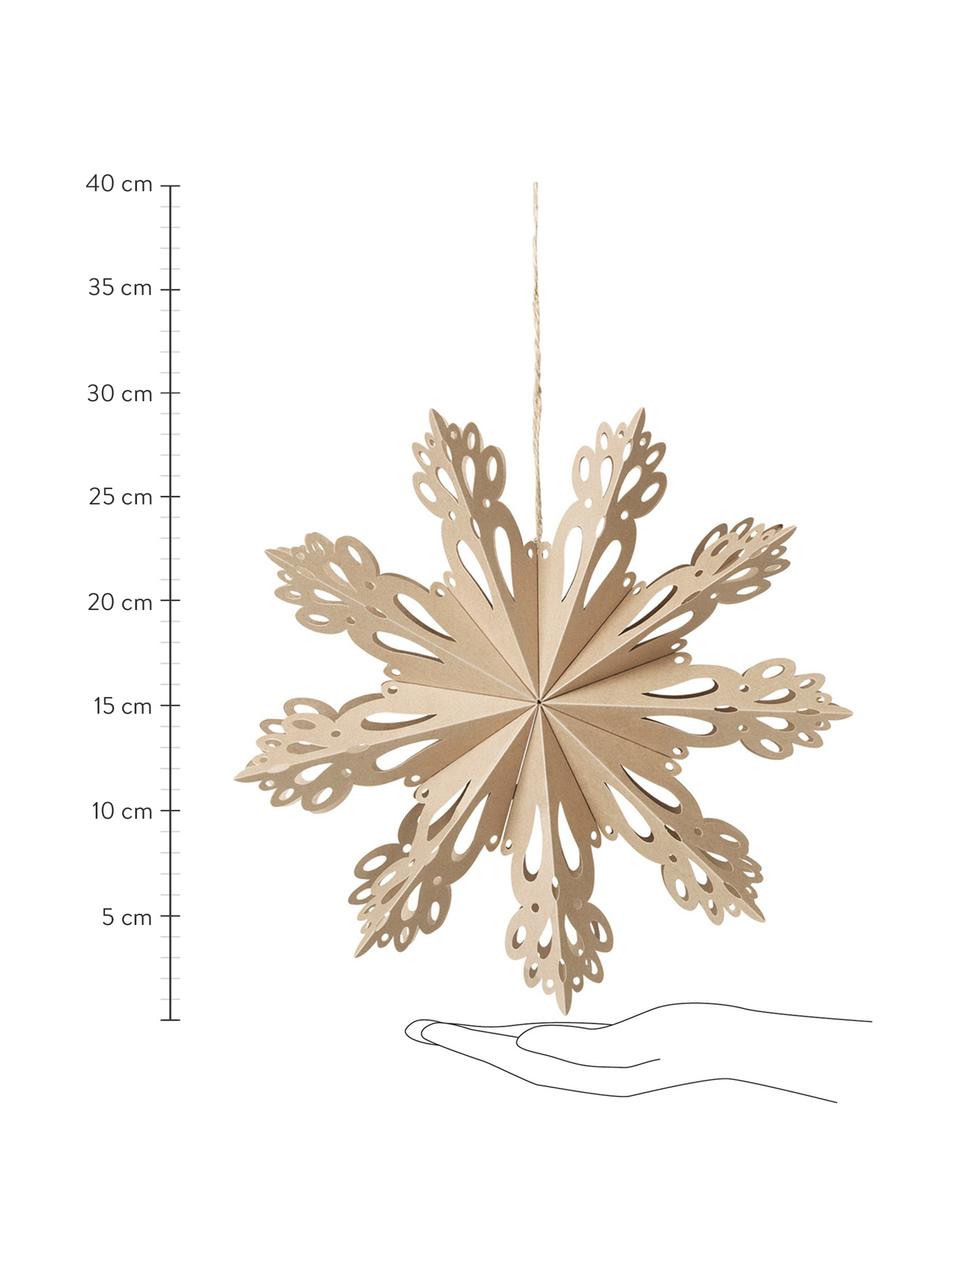 Flocon de neige décoratif Snowflake, Carton, Beige, Ø 30 cm